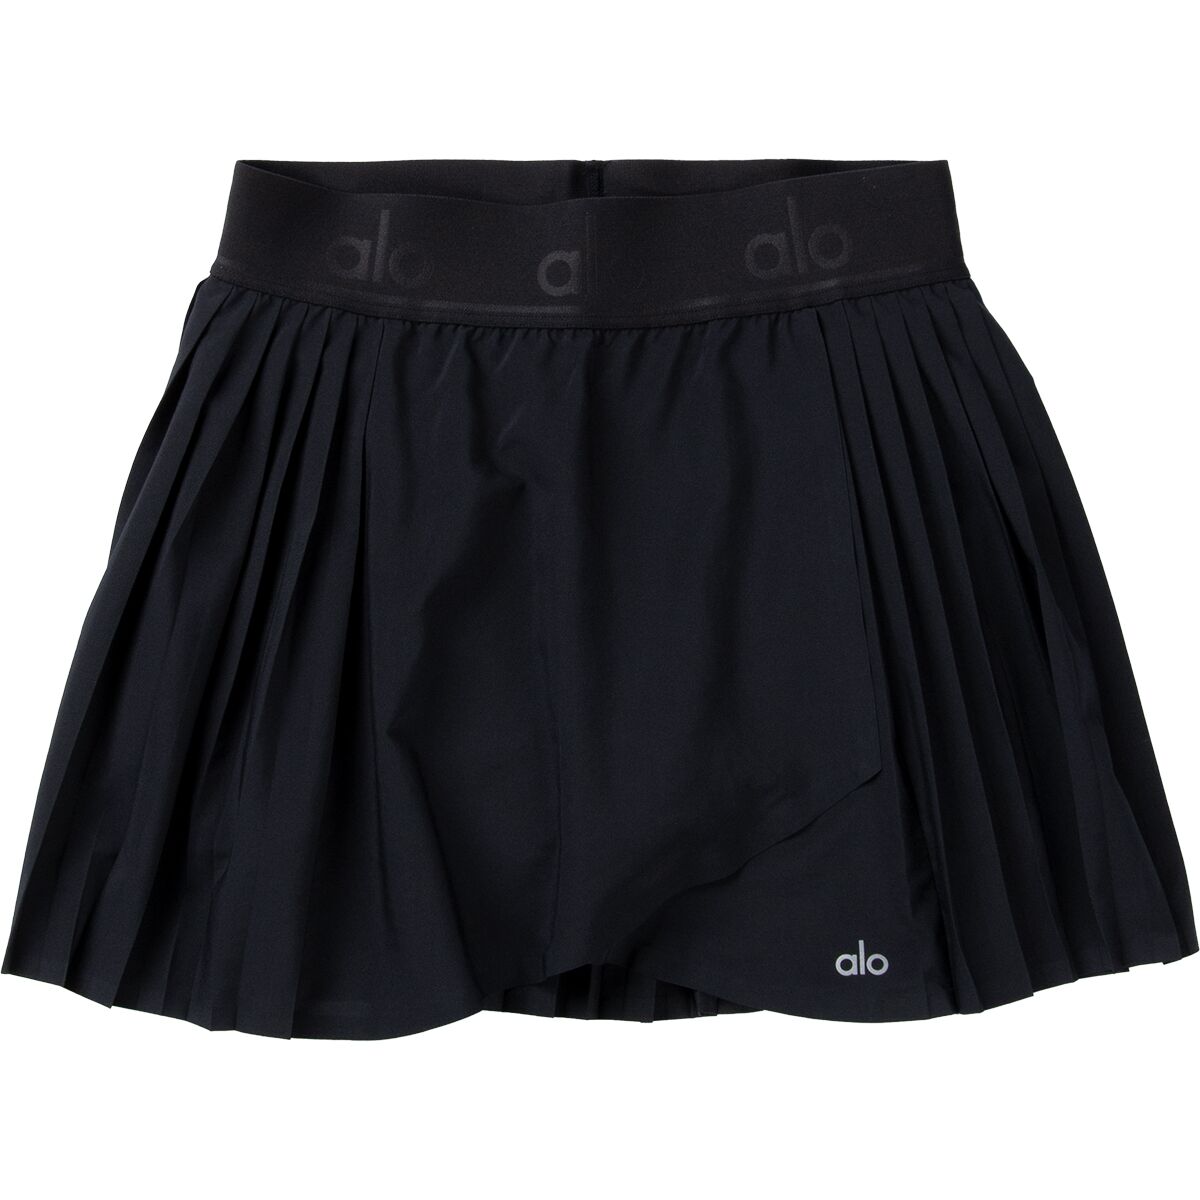 ALO YOGA Aces Tennis Skirt - Women's - RETAIL